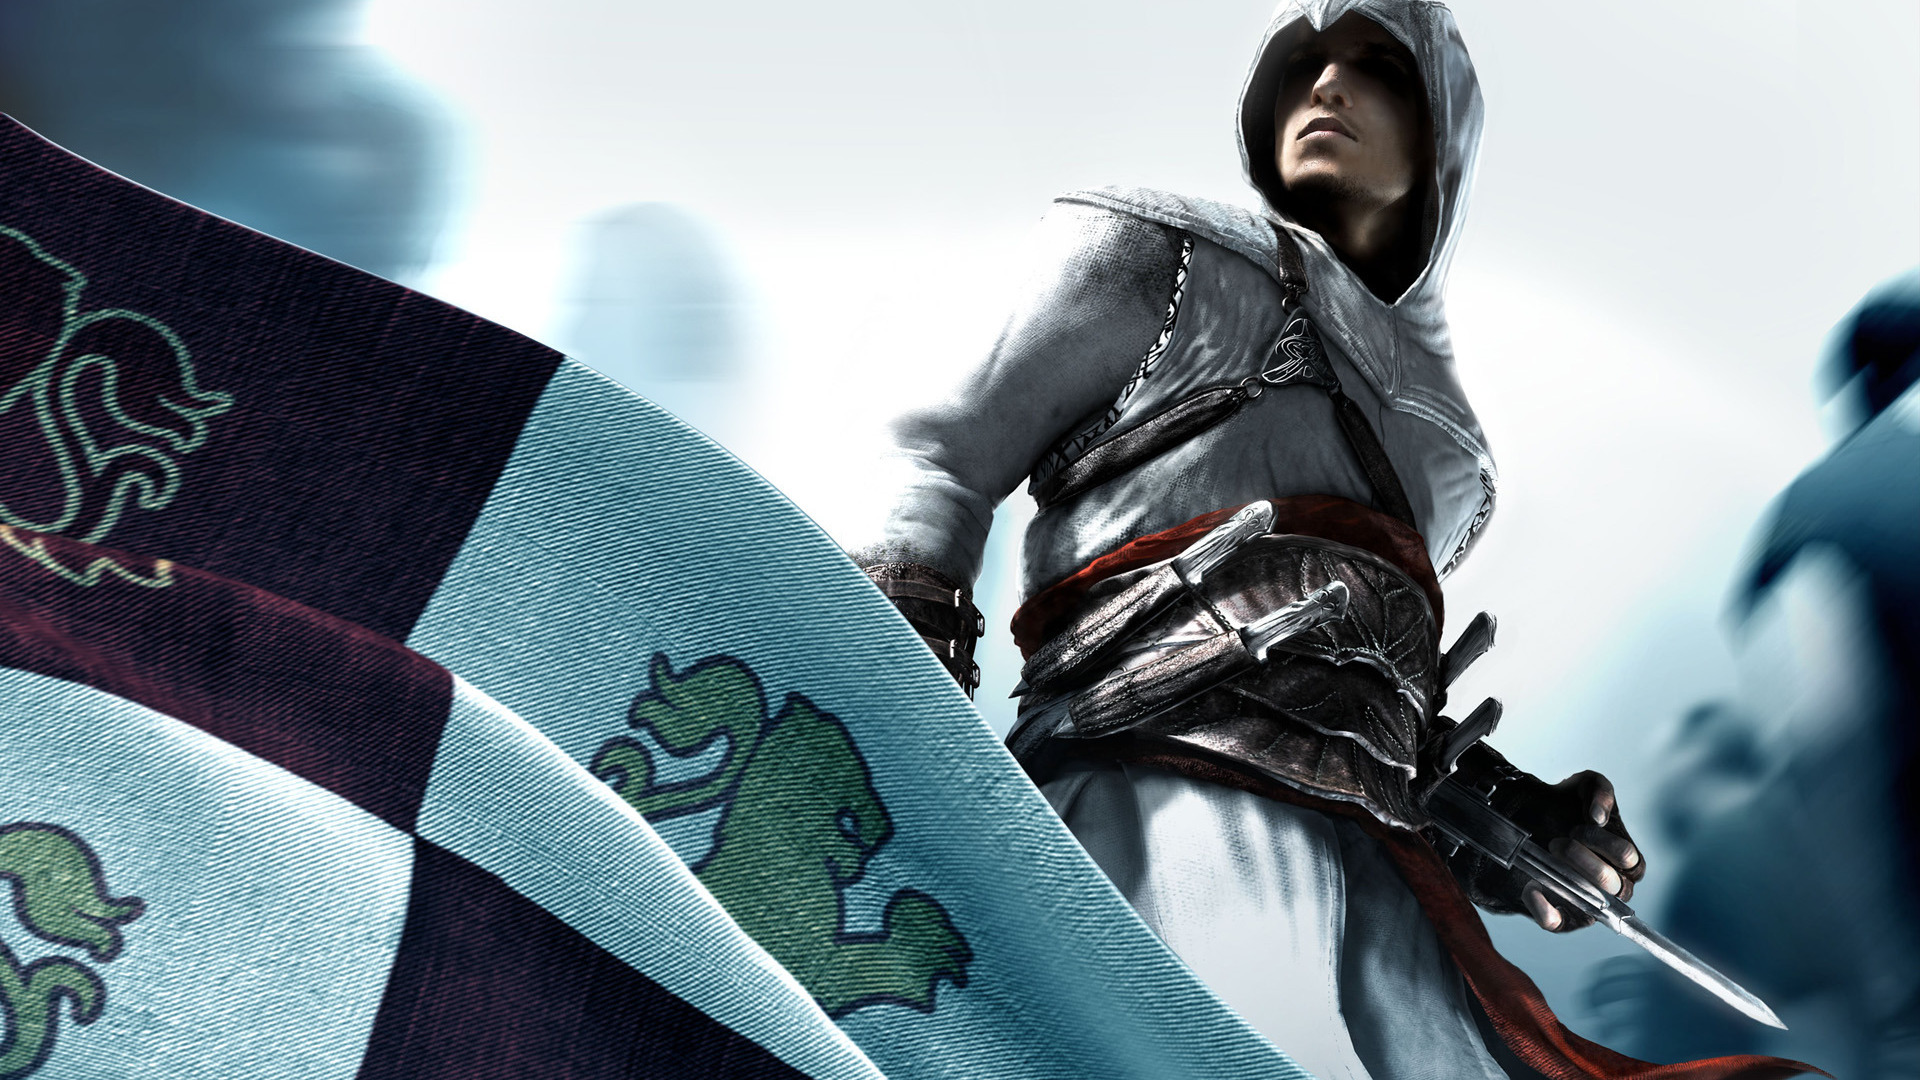 Скачать обои бесплатно Кредо Убийцы (Assassin's Creed), Игры картинка на рабочий стол ПК